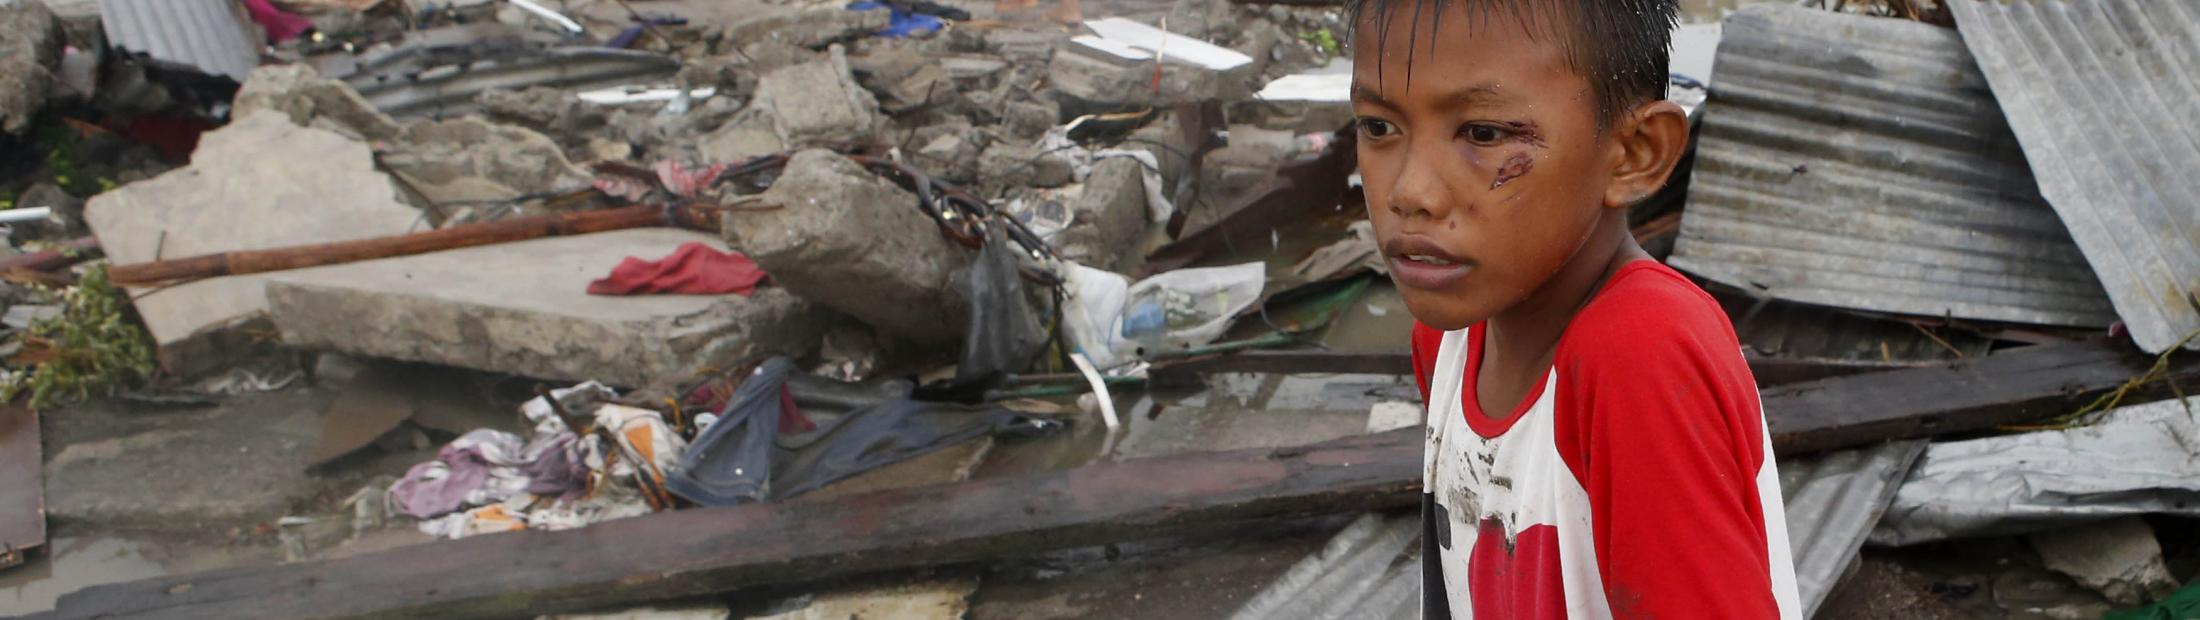 ACNUR envía por avión ayuda humanitaria a los supervivientes del tifón Haiyán en Filipinas